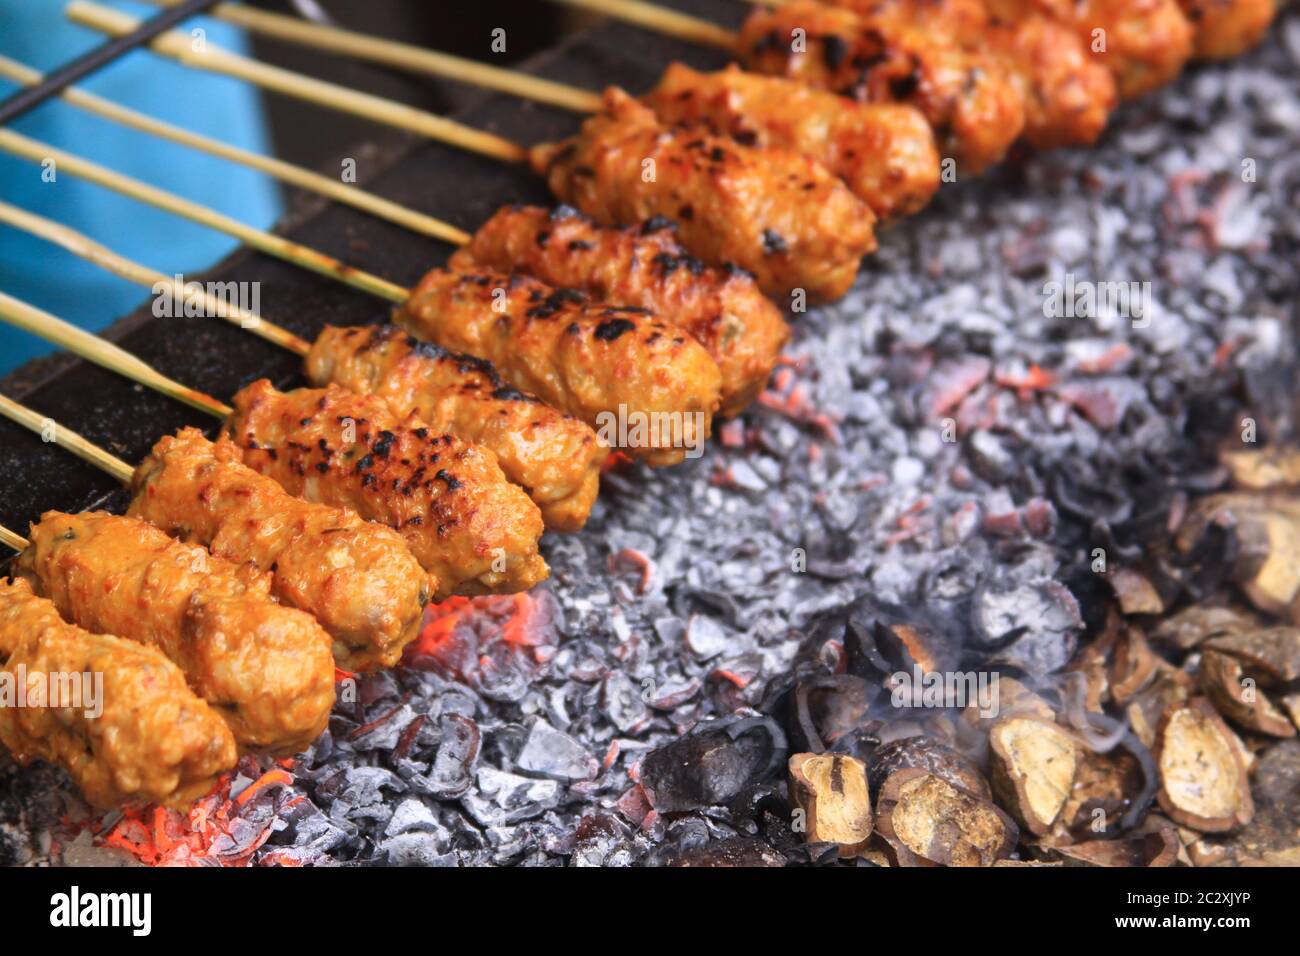 Frische, zum Grillen fertige Sate Sticks in Lombok, Indonesisch. Ziege, Huhn, Schweinefleisch und Fisch Fleisch auf einem Stock auf einem Teller mit Marinade bereit für gri stecken Stockfoto